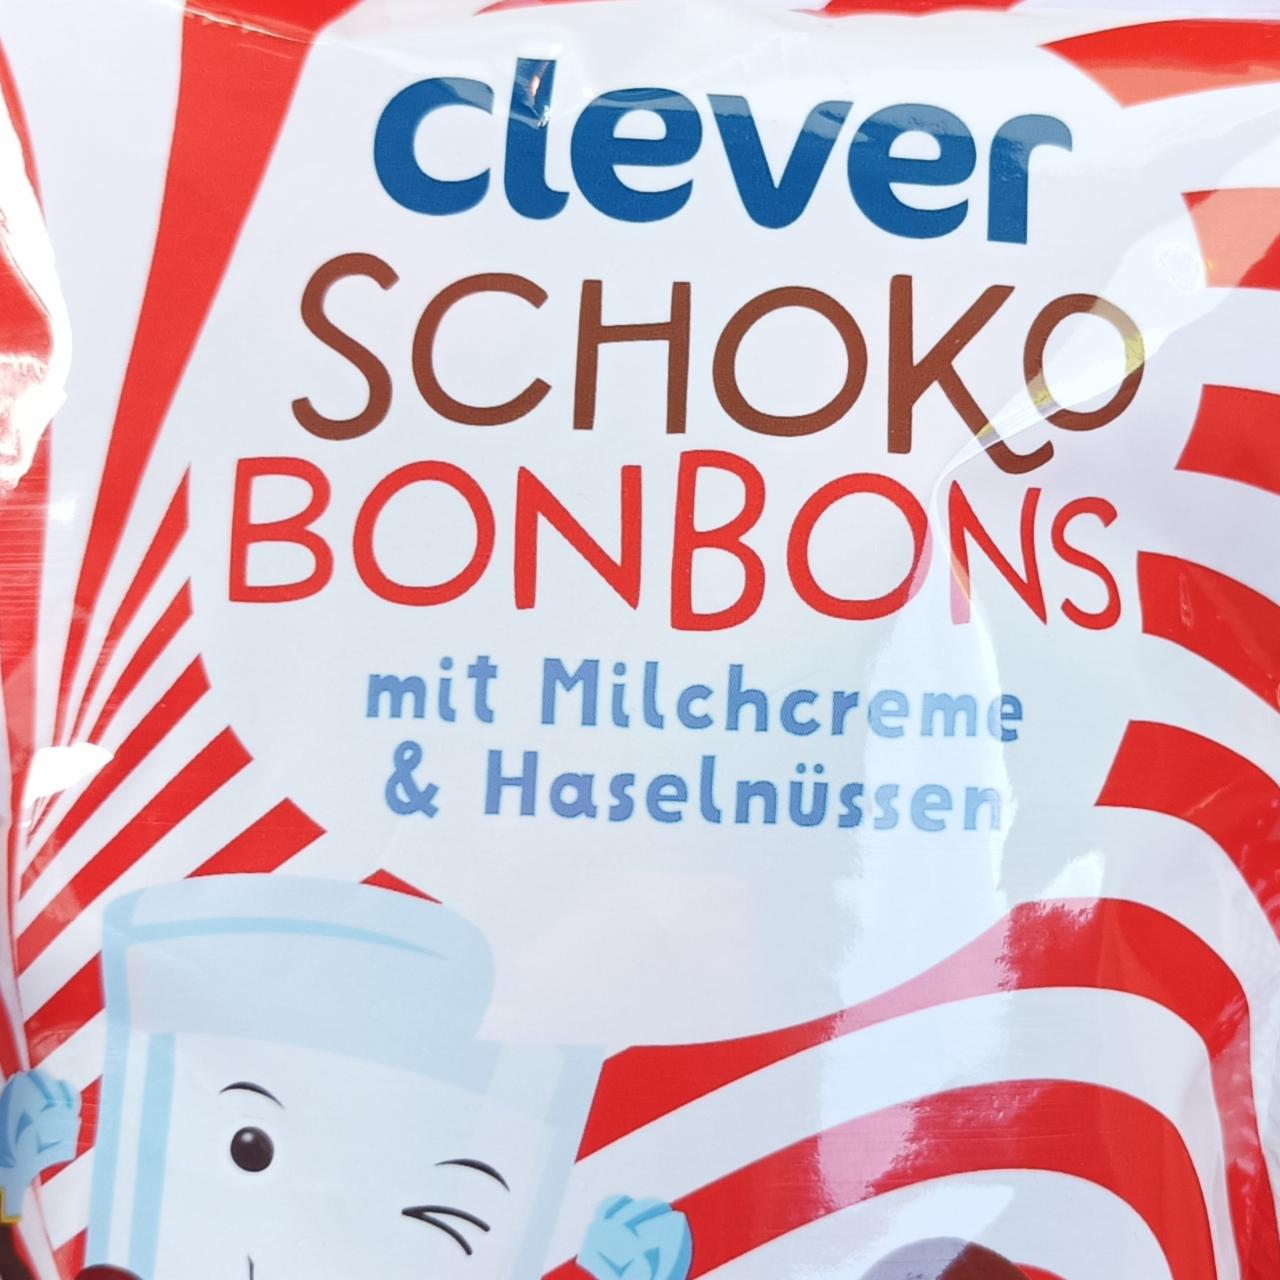 Fotografie - Schoko bonbons mit Milchcreme & haselnüssen Clever